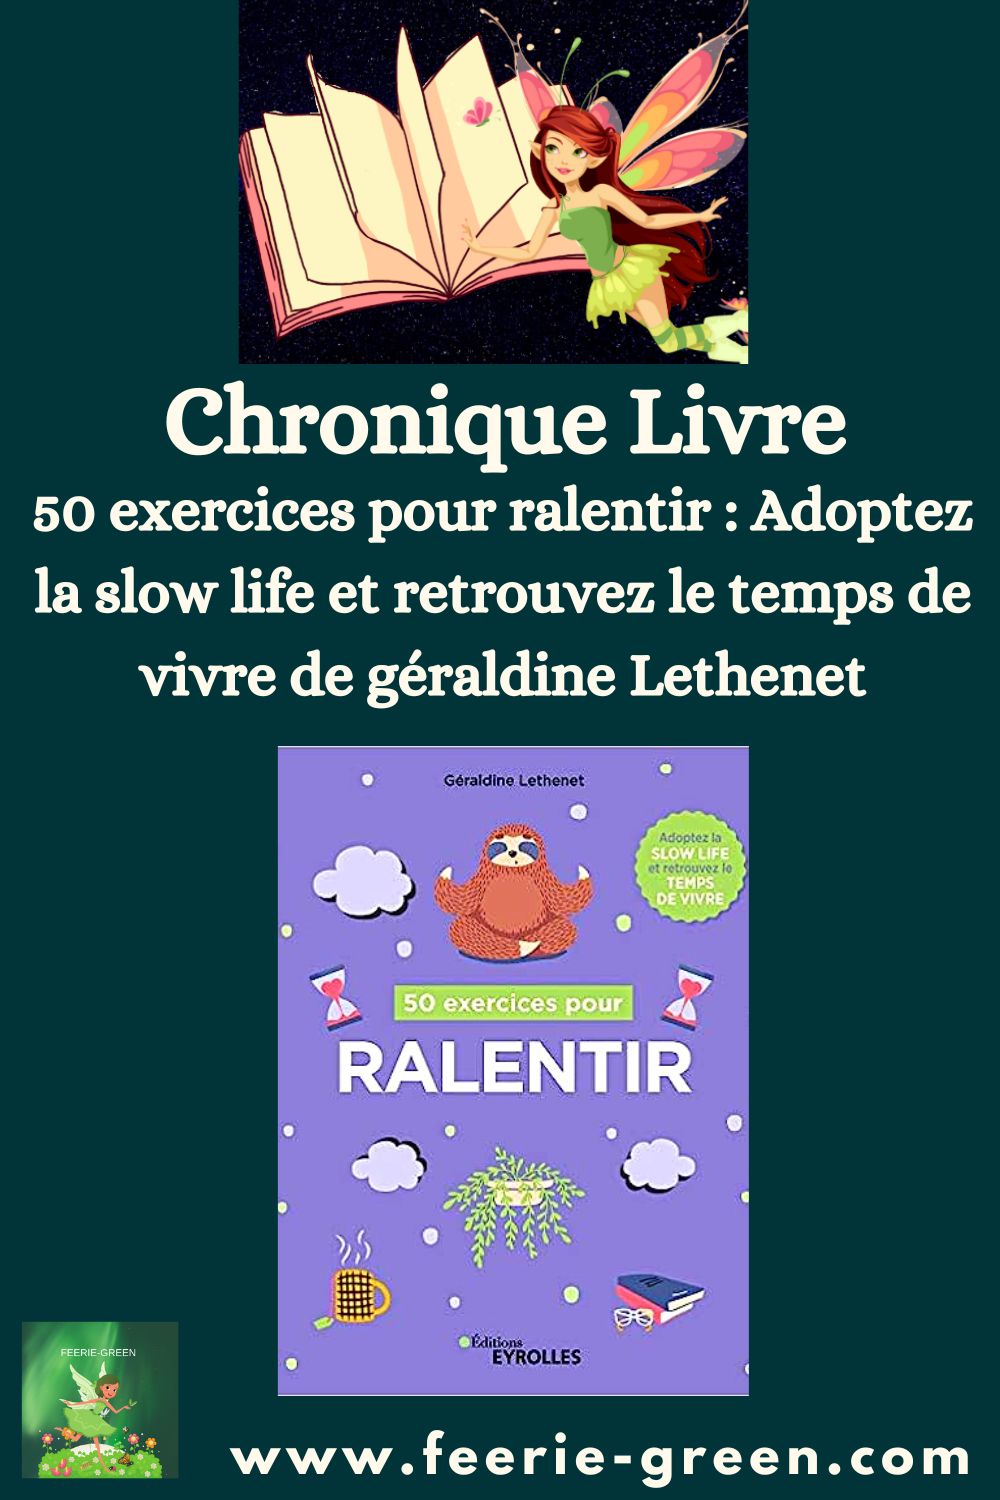 50 exercices pour ralentir Adoptez la slow life et retrouvez le temps de vivre de géraldine Lethenet - pinterest